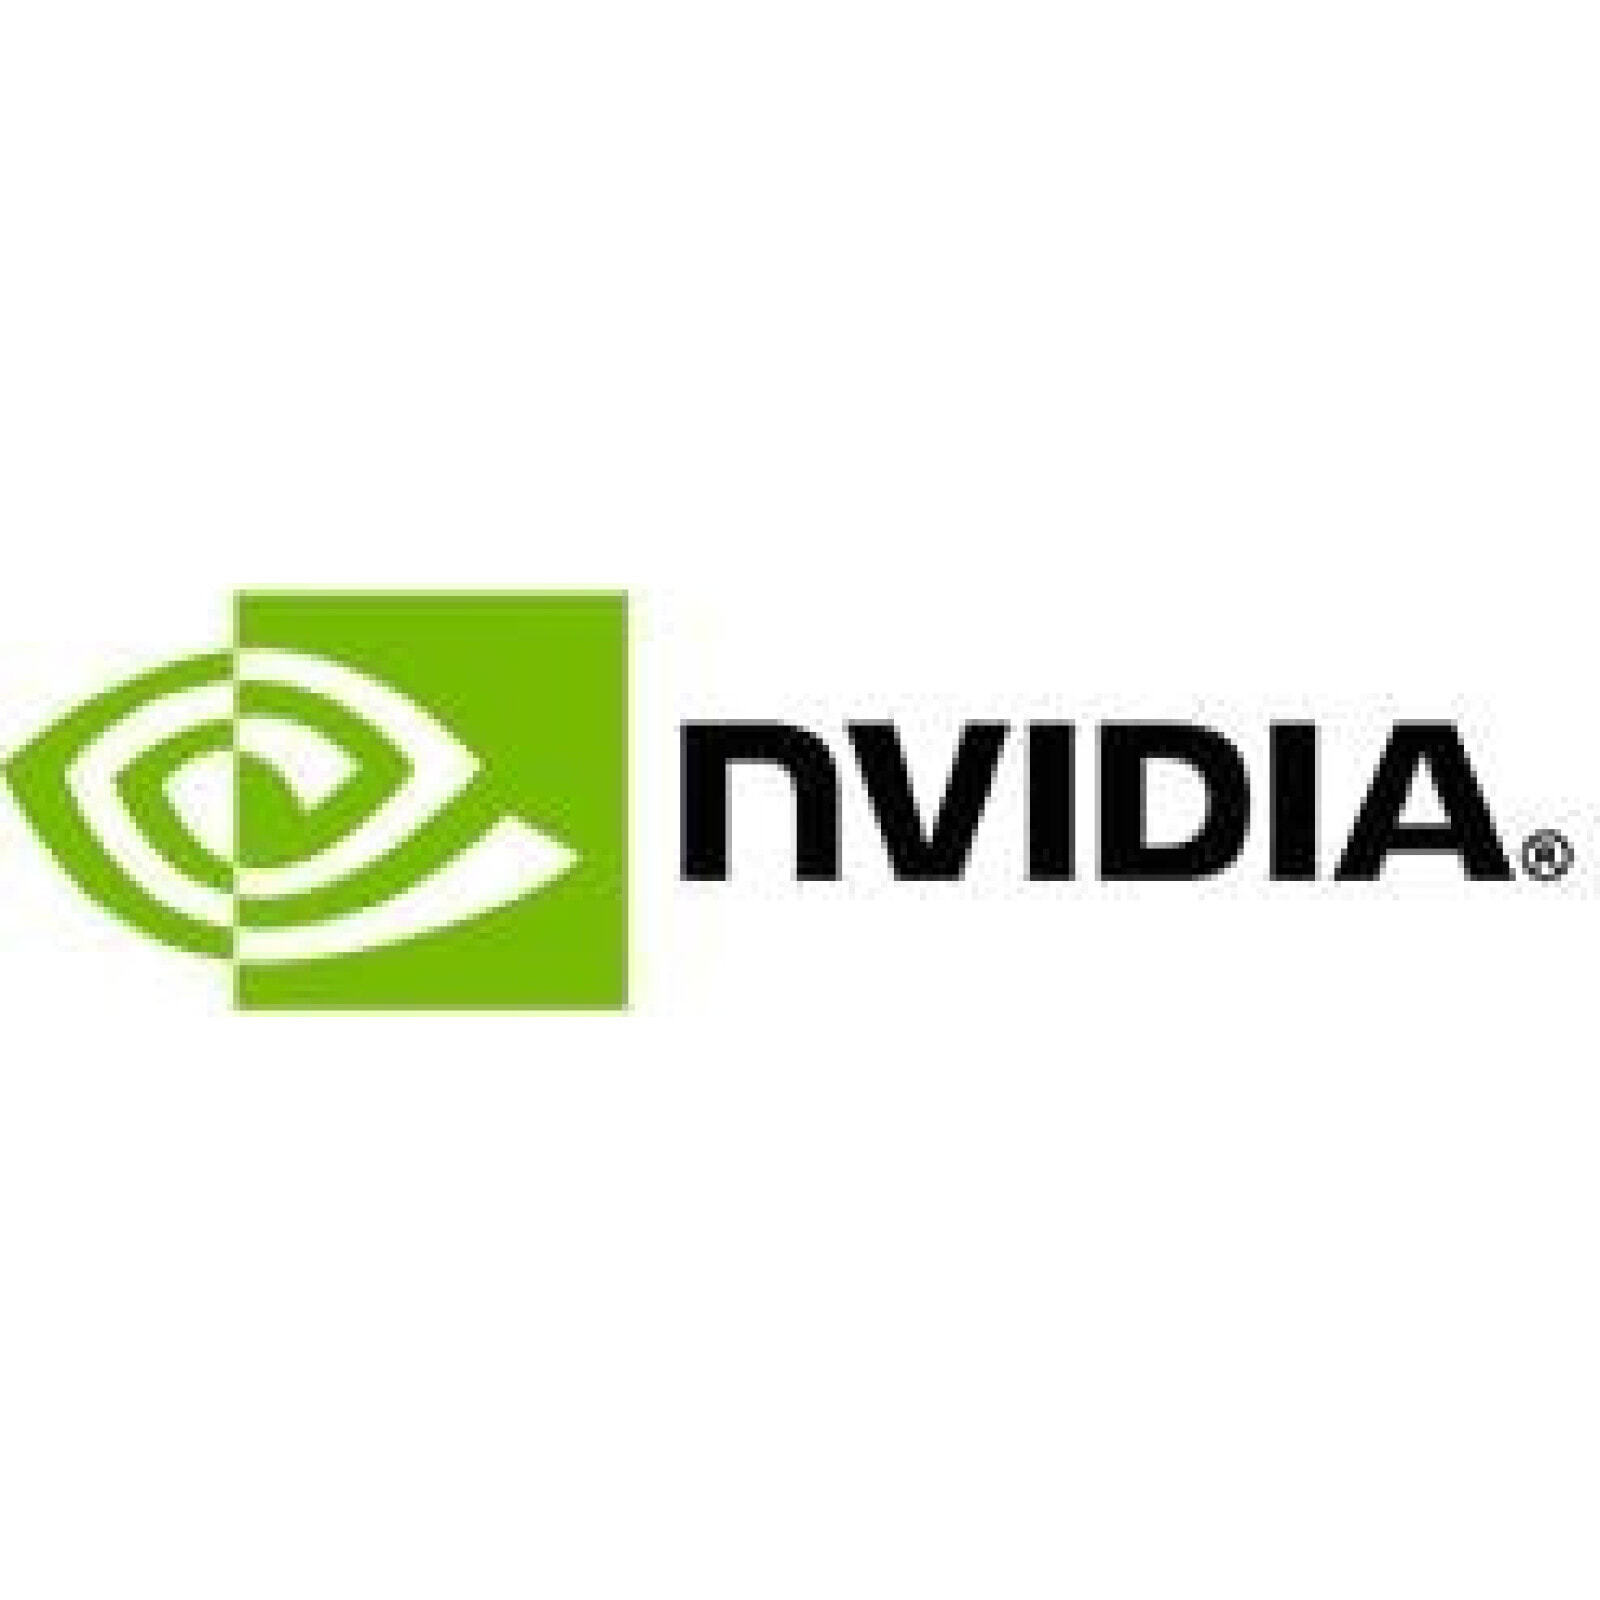 Инвидеа. NVIDIA. Логотип нвидиа. NVIDIA товарный знак. NVIDIA PNG.